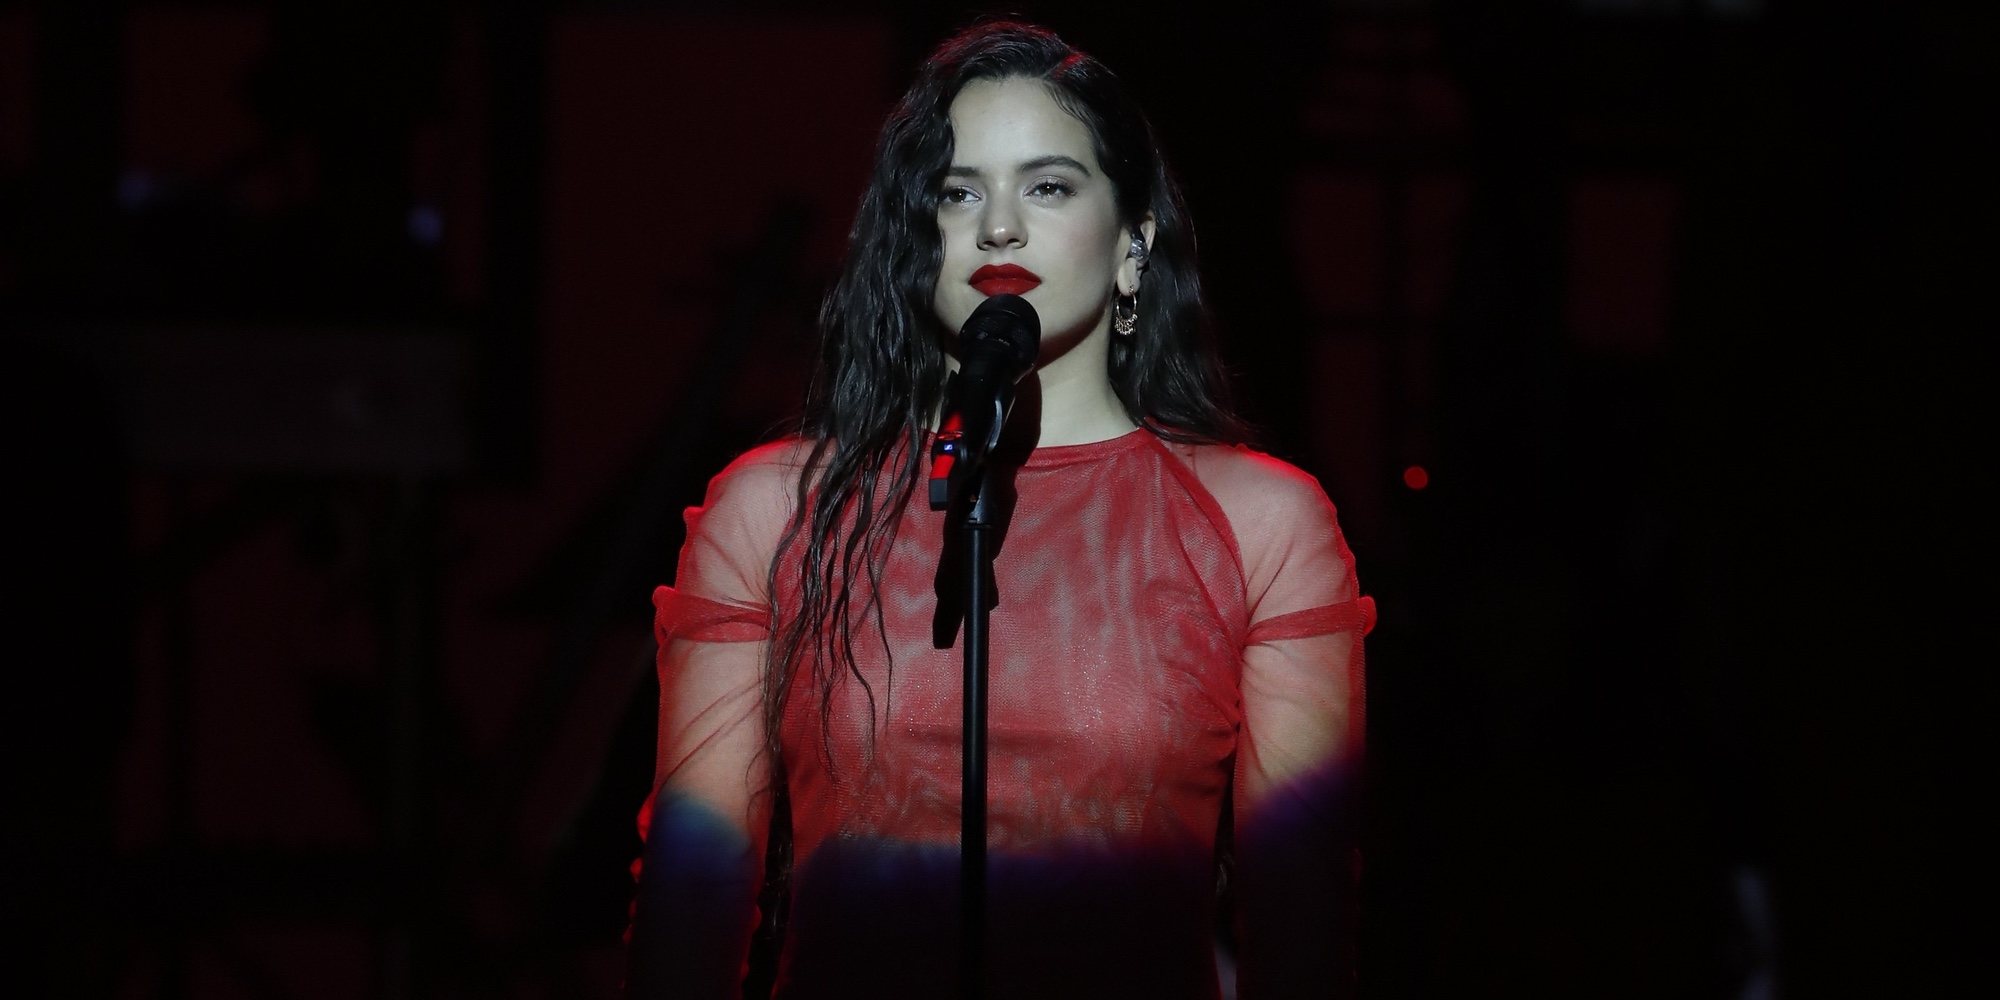 La tremenda actuación de Rosalía en los Premios Goya 2019: acompañada por un coro cantando 'Me quedo contigo'